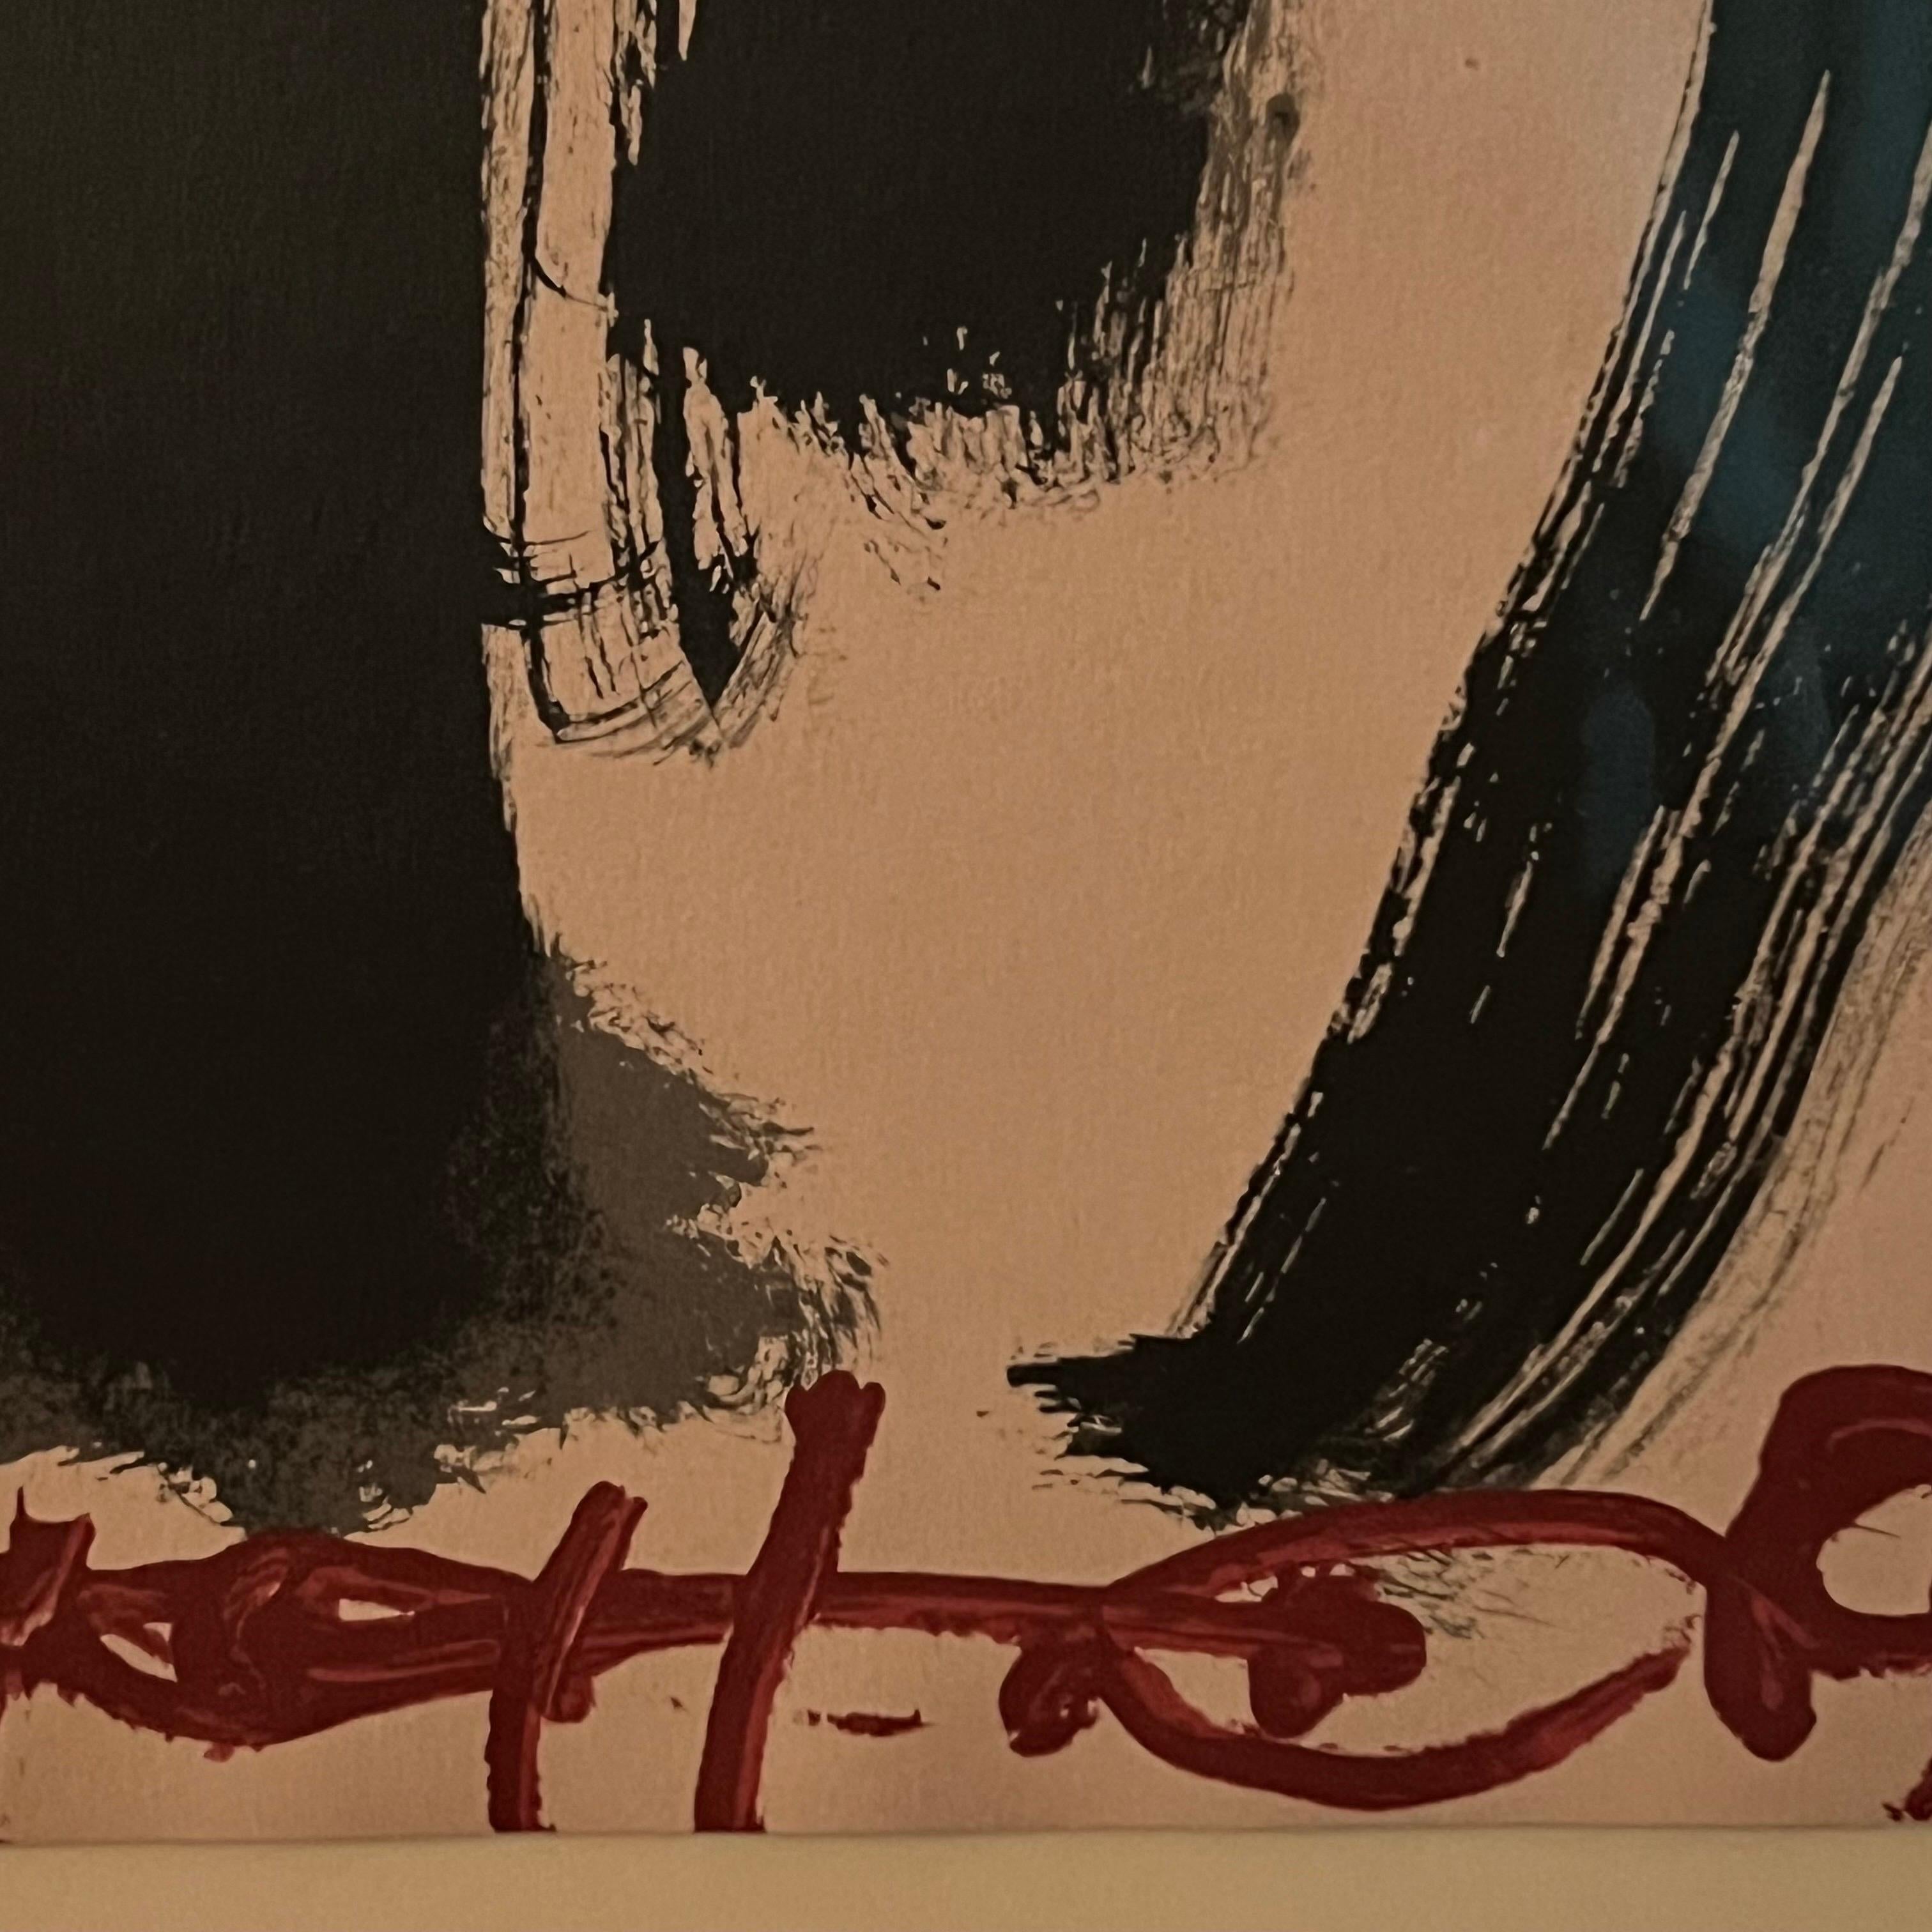 Fantastische schwarze und rote abstrakte Lithographie auf Papier schön in einem Schattenbogenrahmen mit Museumsglas gerahmt. Handsigniert und nummeriert. 

Antoni Tàpies wurde am 13. Dezember 1923 in Barcelona geboren. Seine Jugendzeit wurde durch